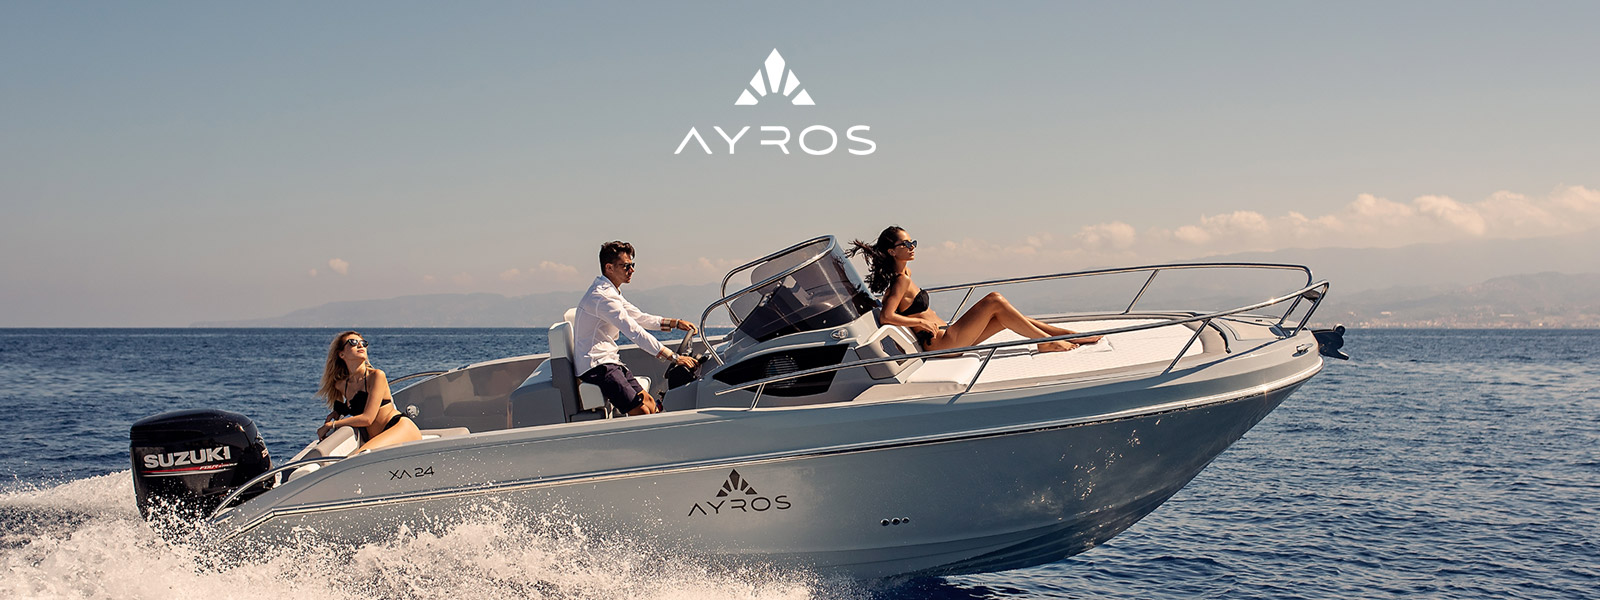 Ayros  Yachting 